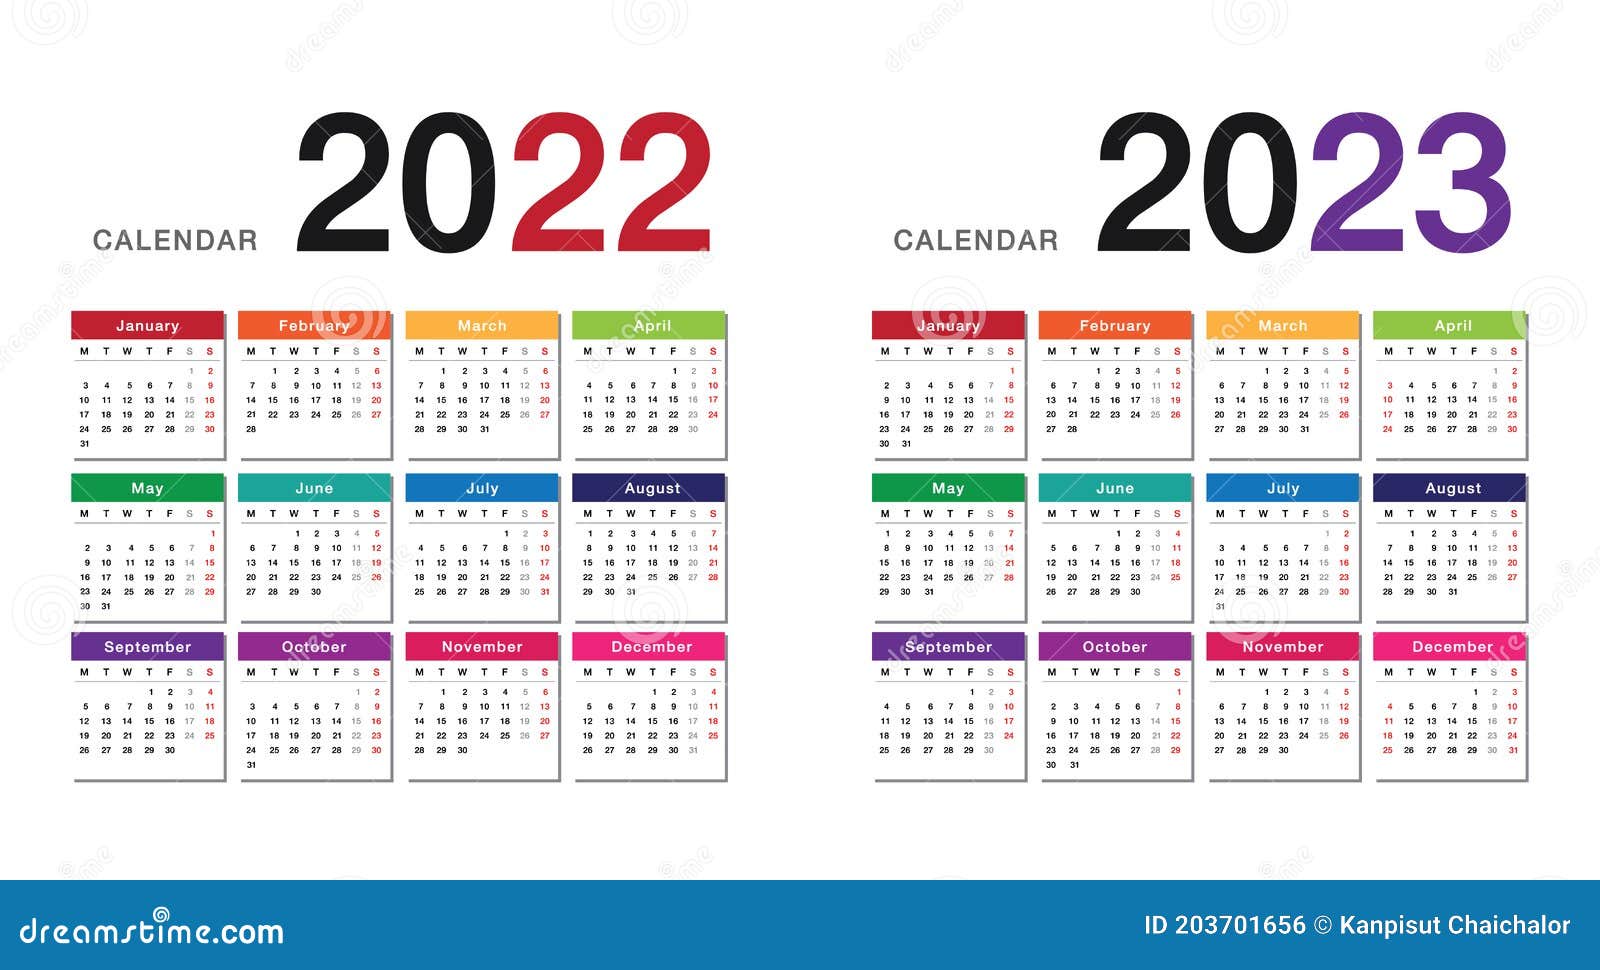 free-printable-calendar-2022-and-2023-template-calendar-design-vrogue